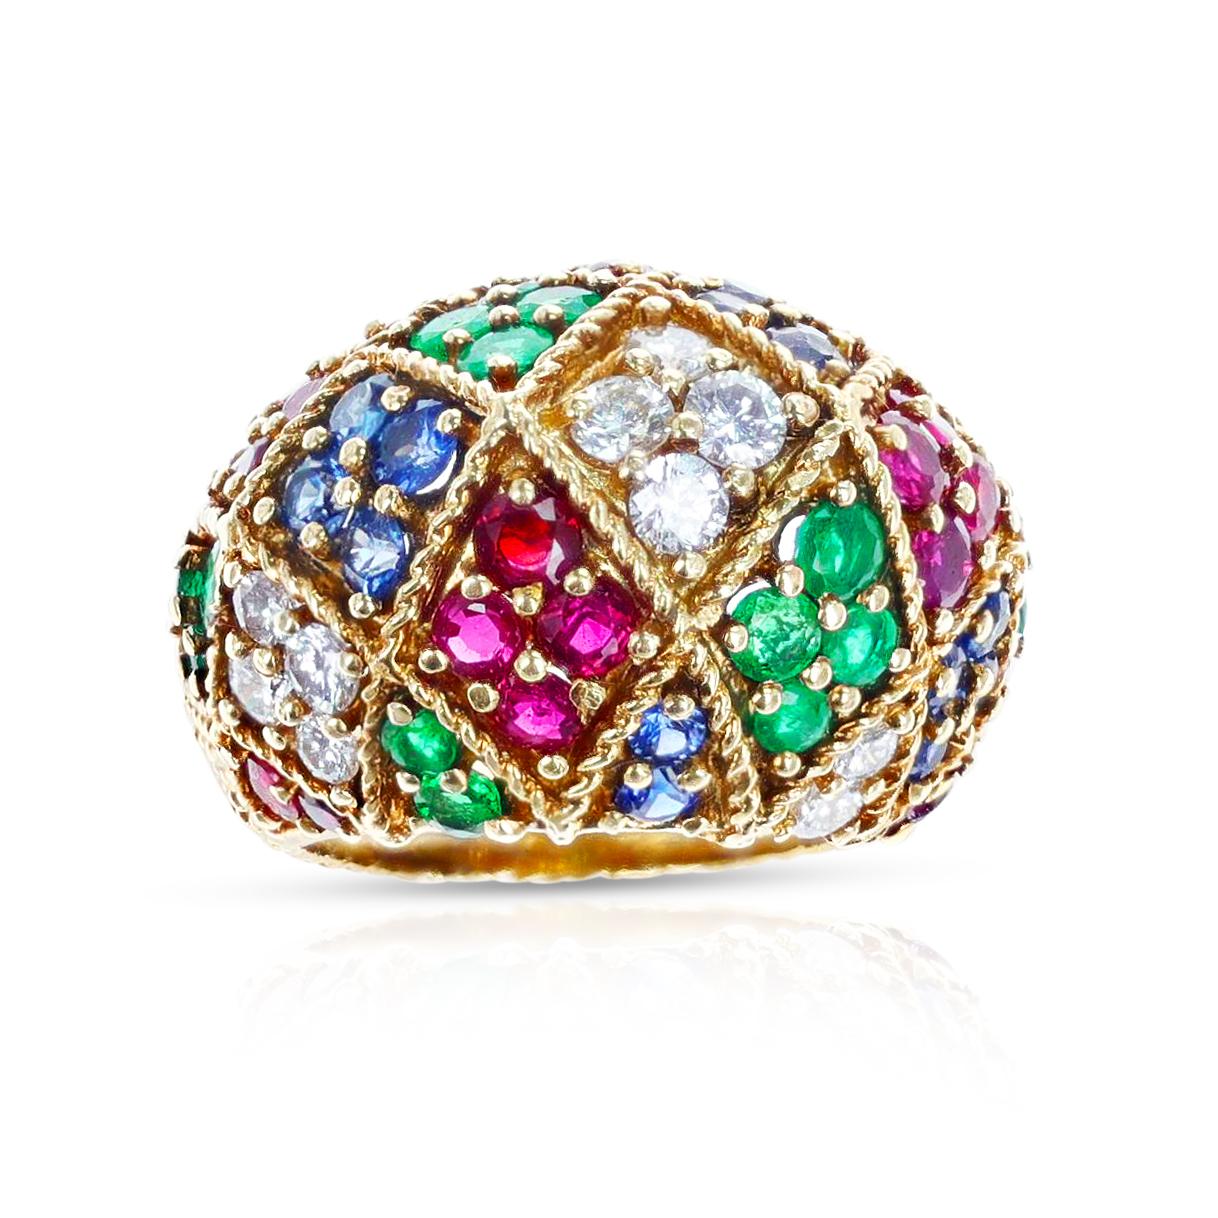 Ein Rubin-, Smaragd-, Saphir- und Diamant-Ring aus 18 Karat Gelbgold mit Struktur. Das Gesamtgewicht des Rings beträgt 15,45 Gramm. Die Ringgröße ist US 5. 

 